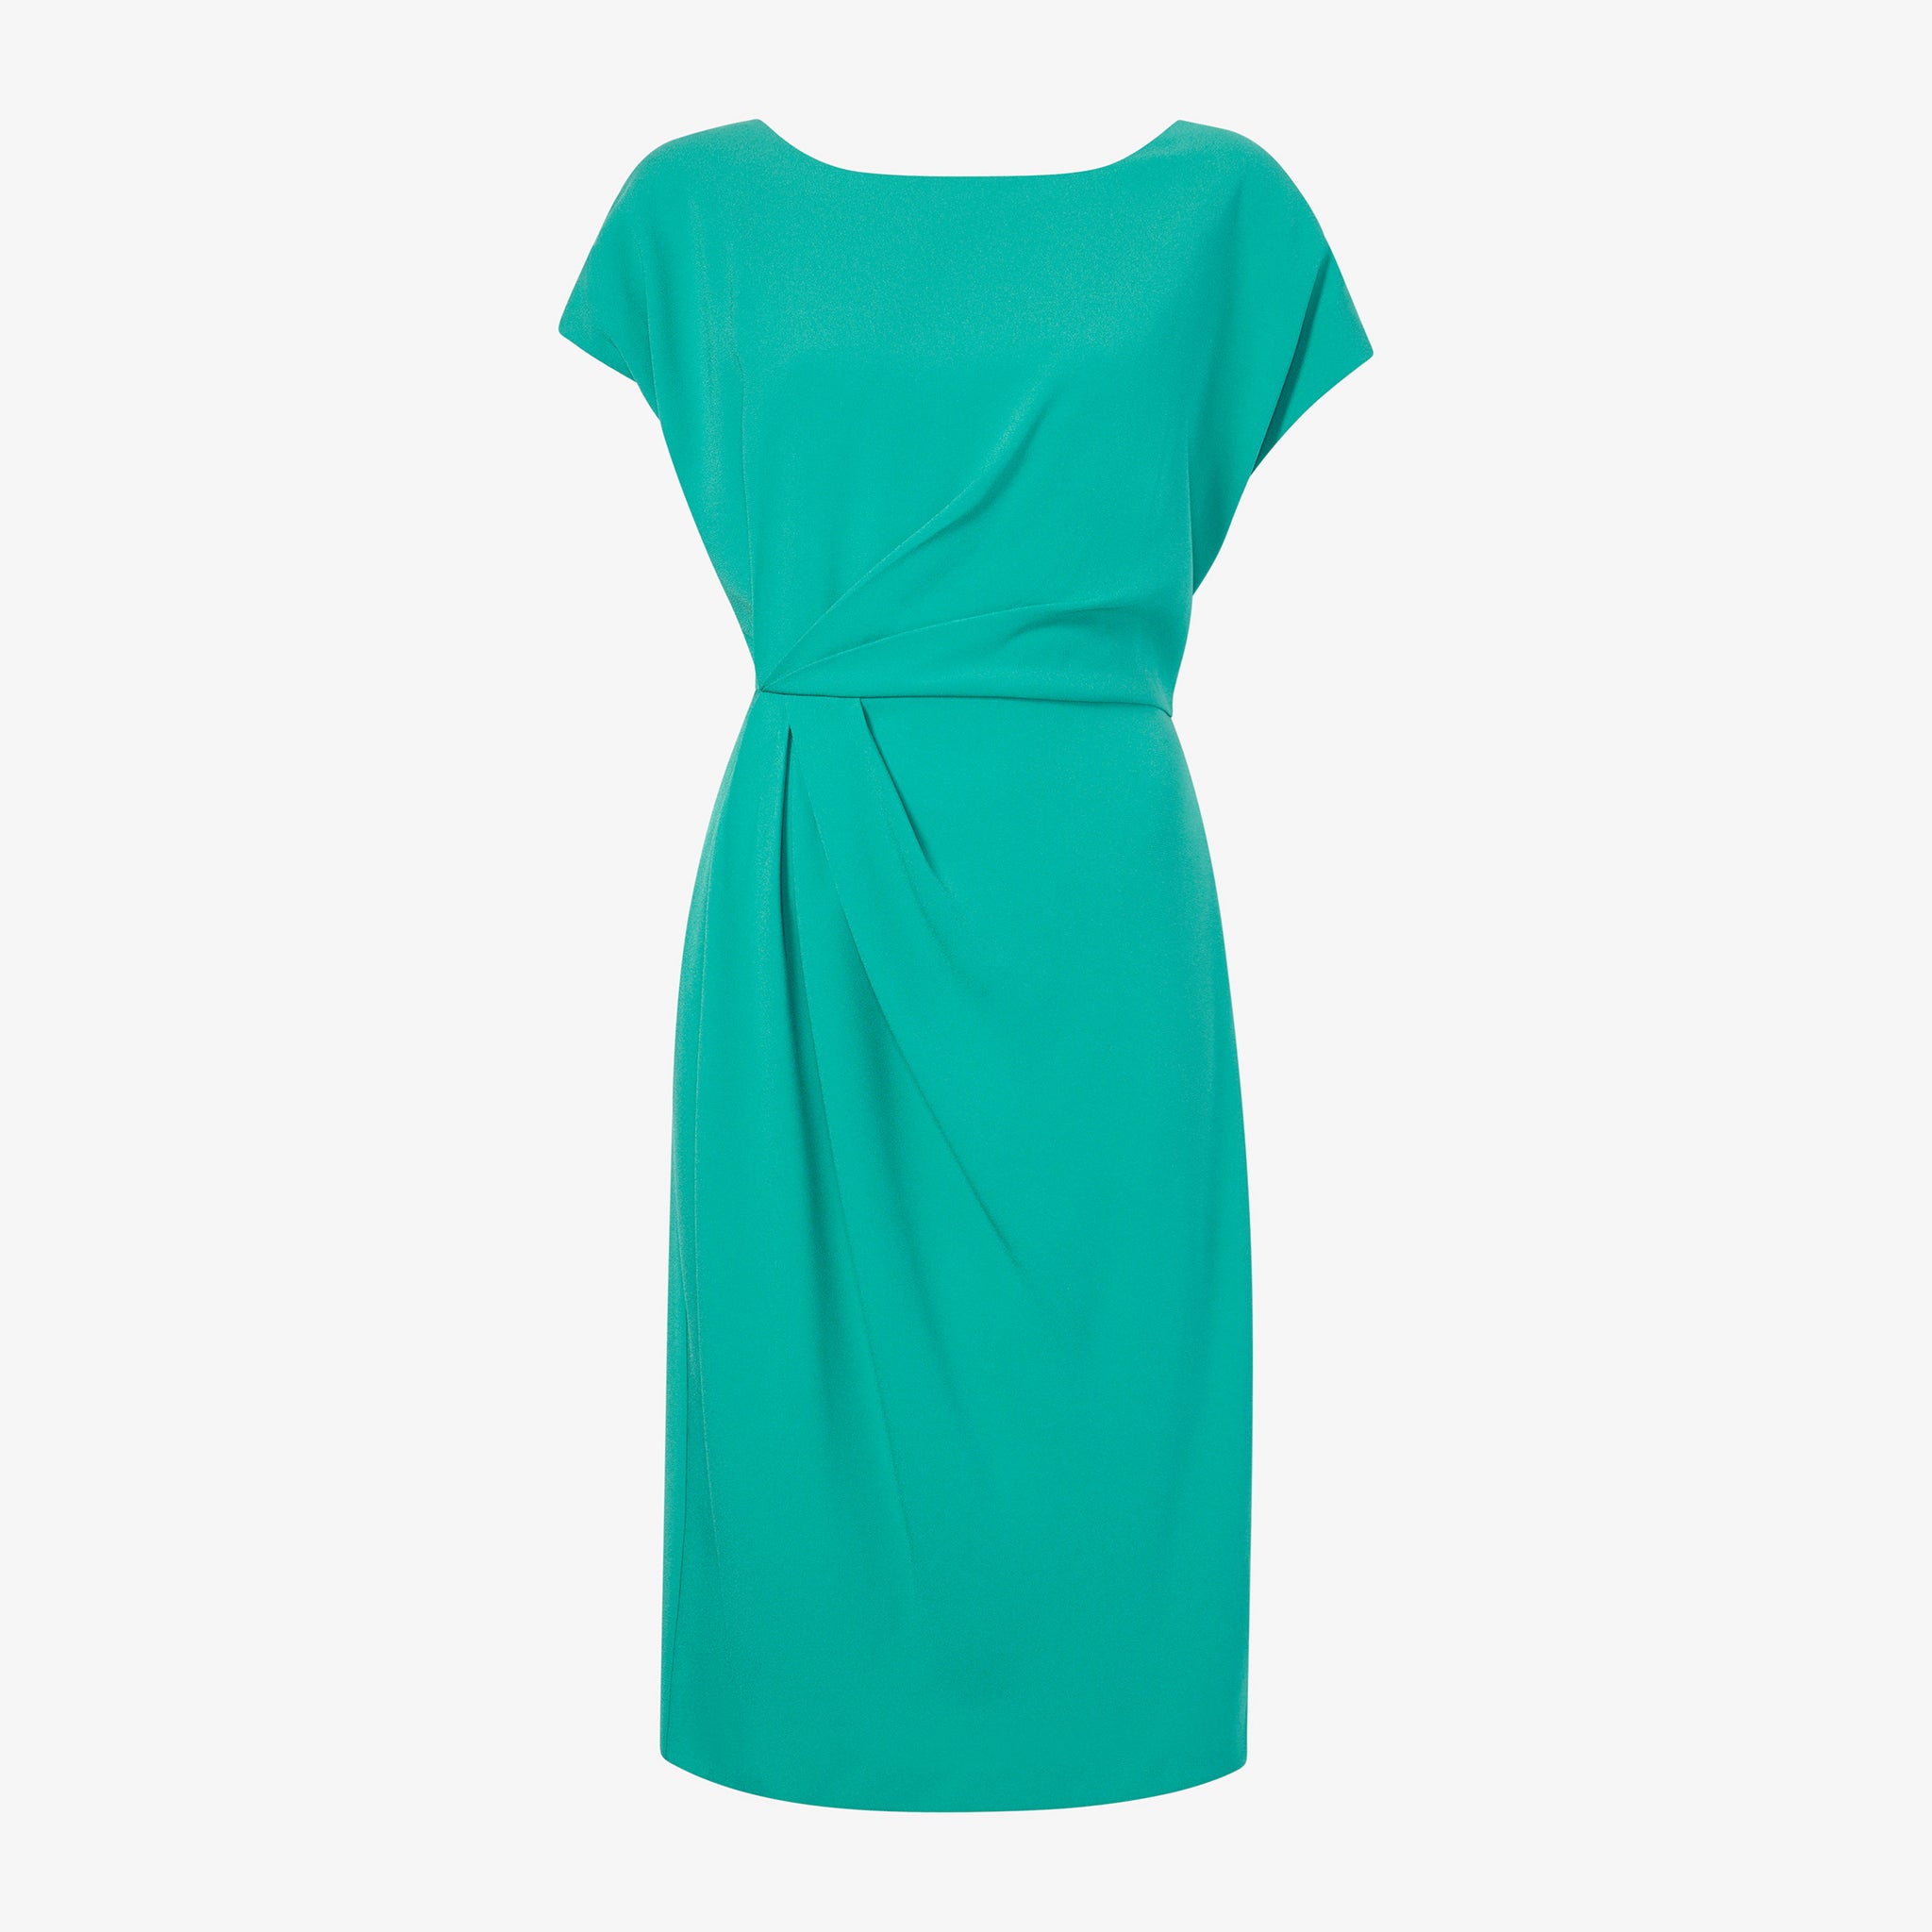 Packshot image of the Jillian Dress - Eco Medium Crepe in Tropical Green